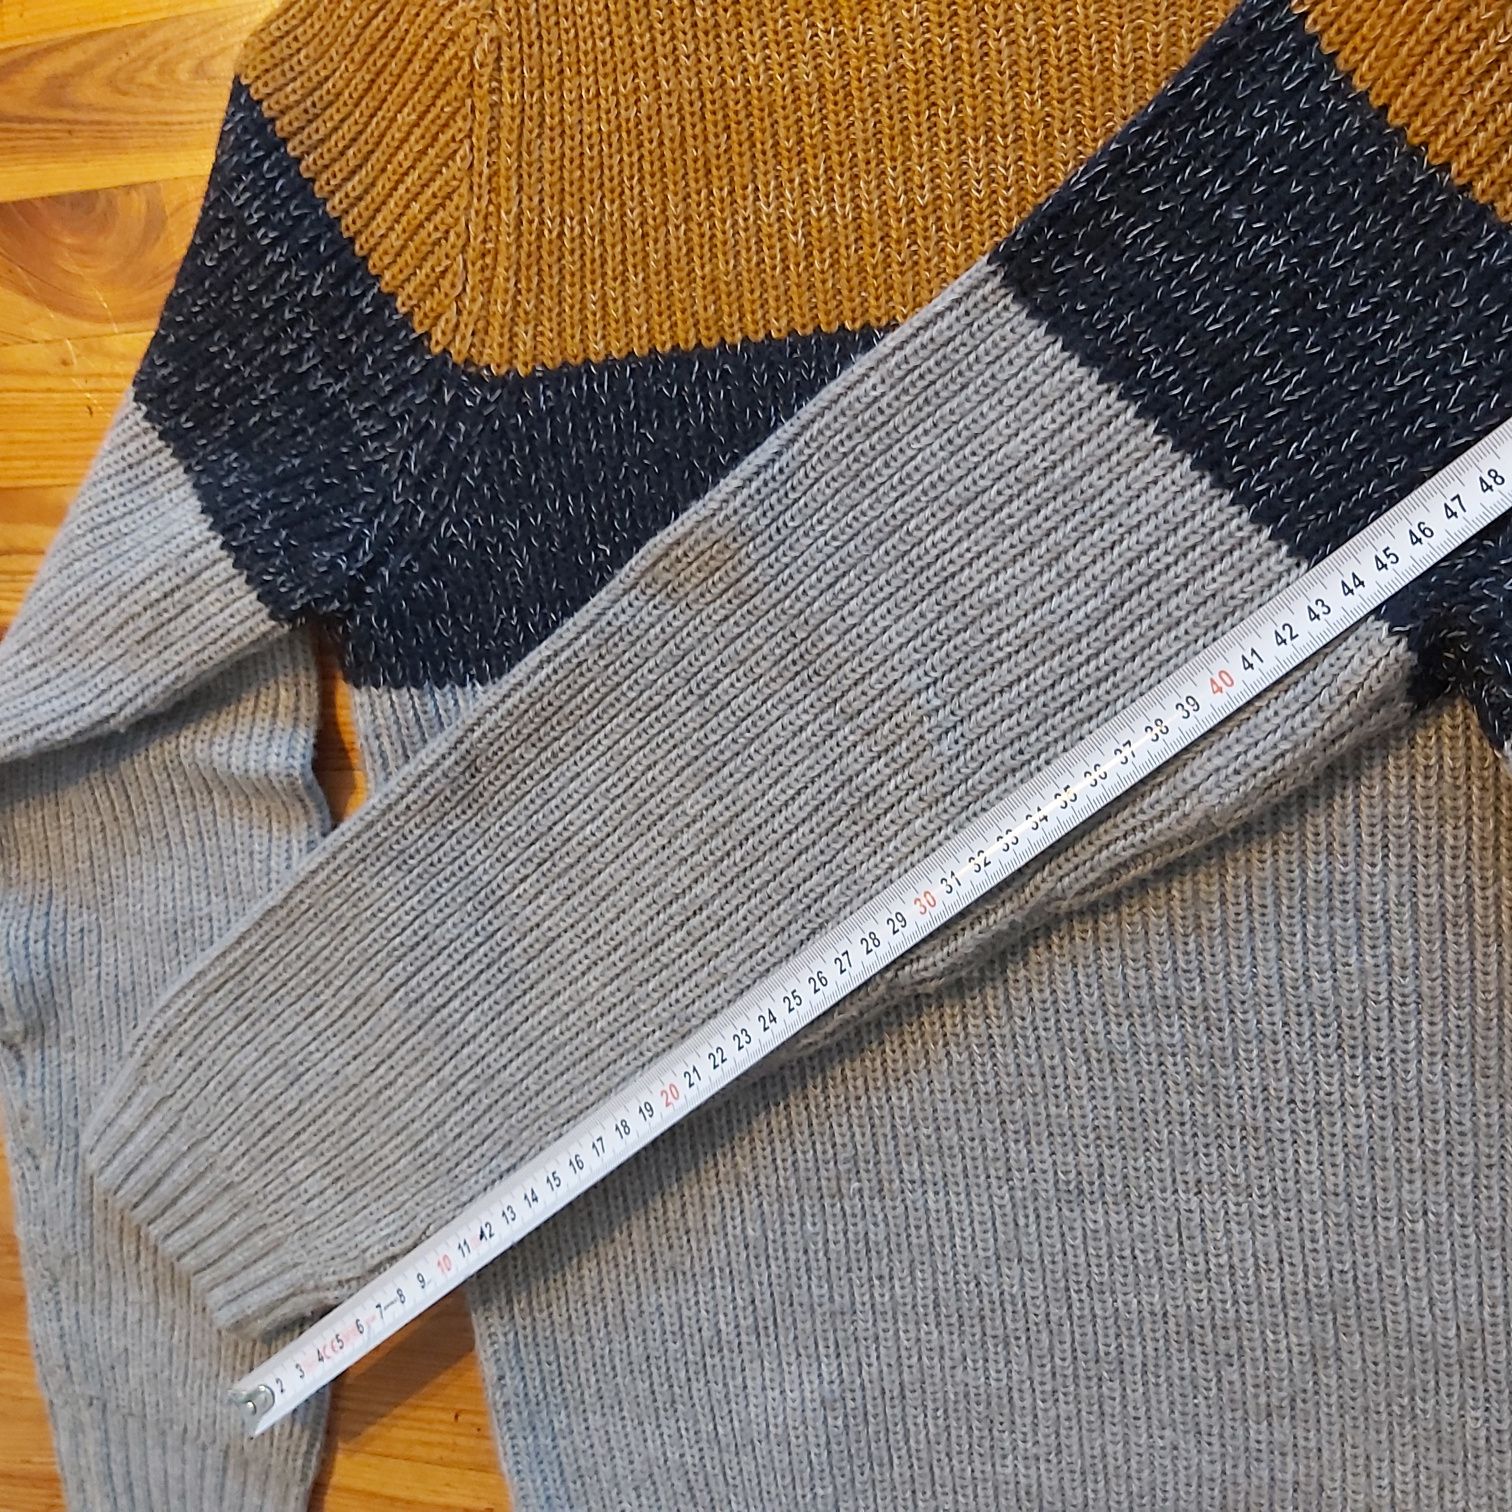 JAK NOWY - Gruby sweter pleciony zimowy ciepły S